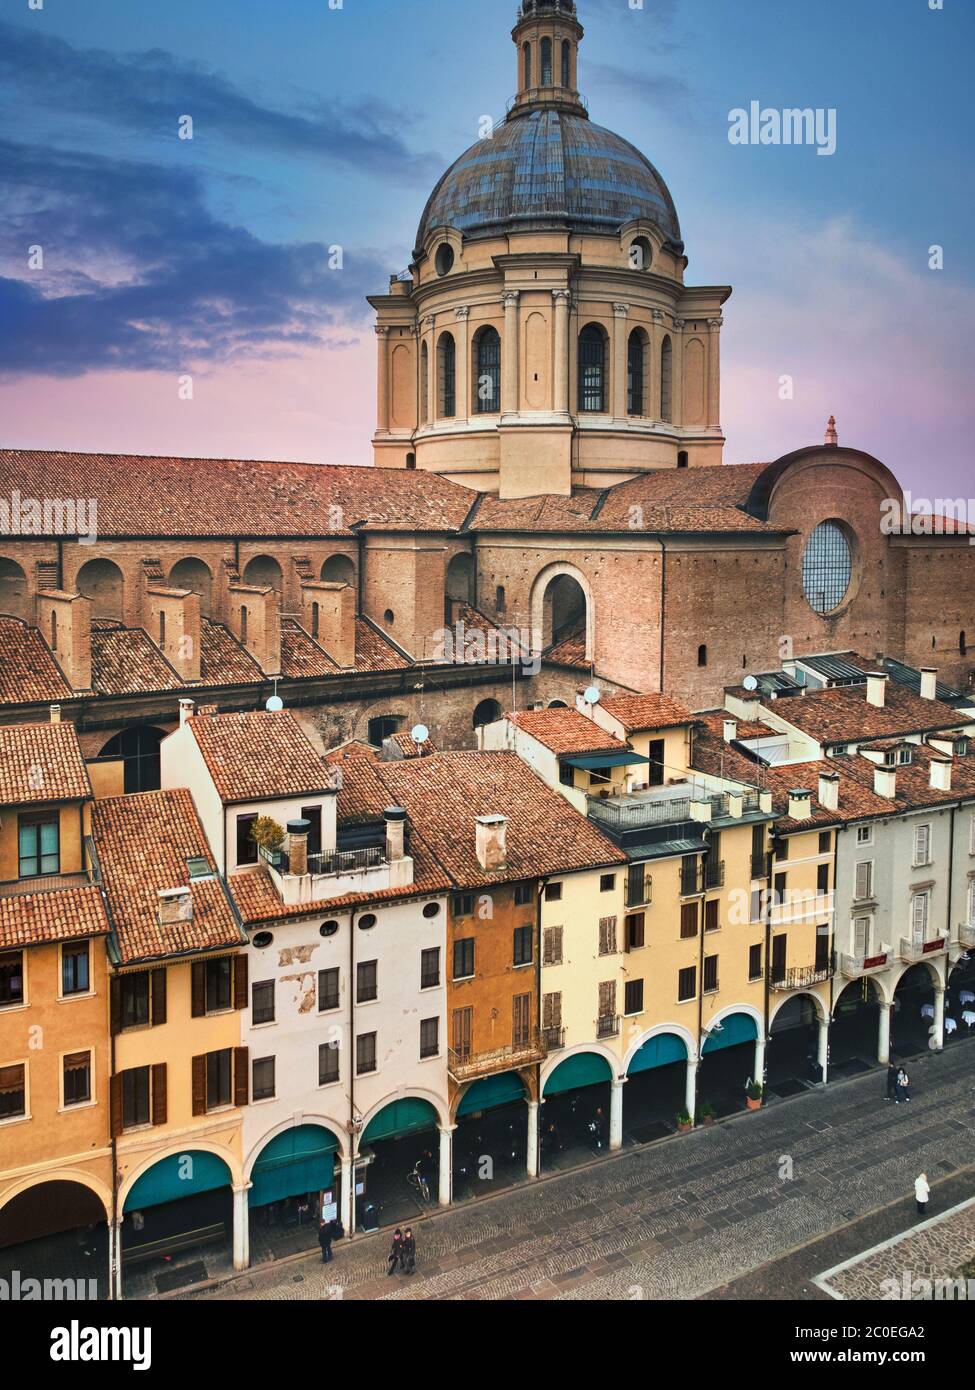 Mantua, Lombardei, Italien. Blick auf die Piazza delle Erbe im historischen Stadtzentrum. Der Platz ist von wichtigen mittelalterlichen Denkmälern umgeben. Stockfoto